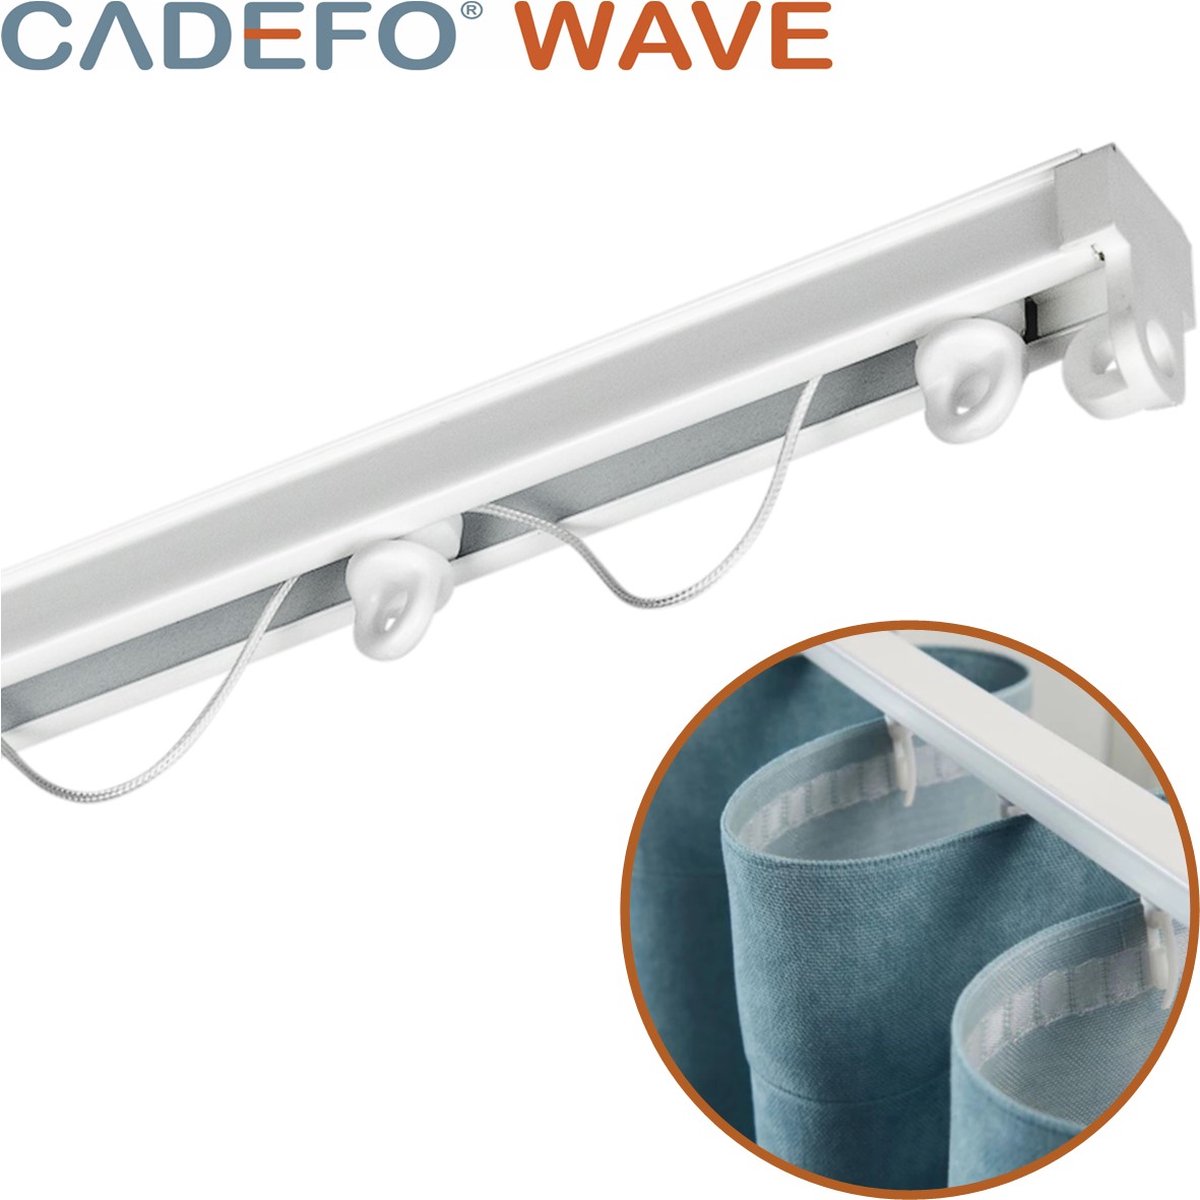 CADEFO WAVE (451 - 500 cm) Gordijnrails - Compleet op maat! - UIT 1 STUK - Leverbaar tot 6 meter - Plafondbevestiging - Lengte 461 cm